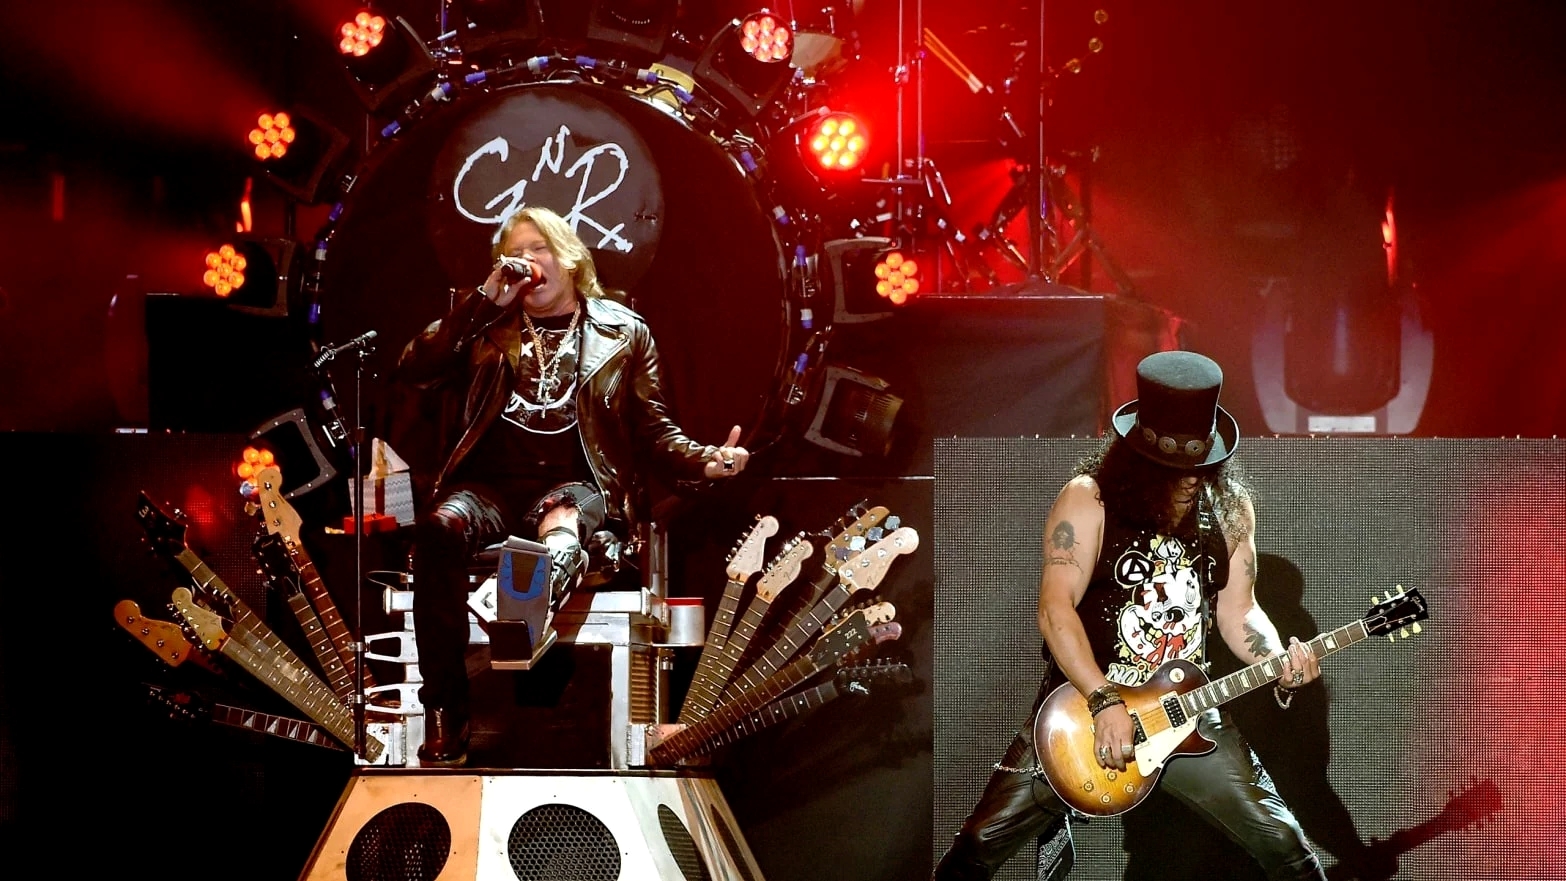 Las leyendas del rock, Guns N 'Roses, vienen a Toronto en su gran gira mundial 